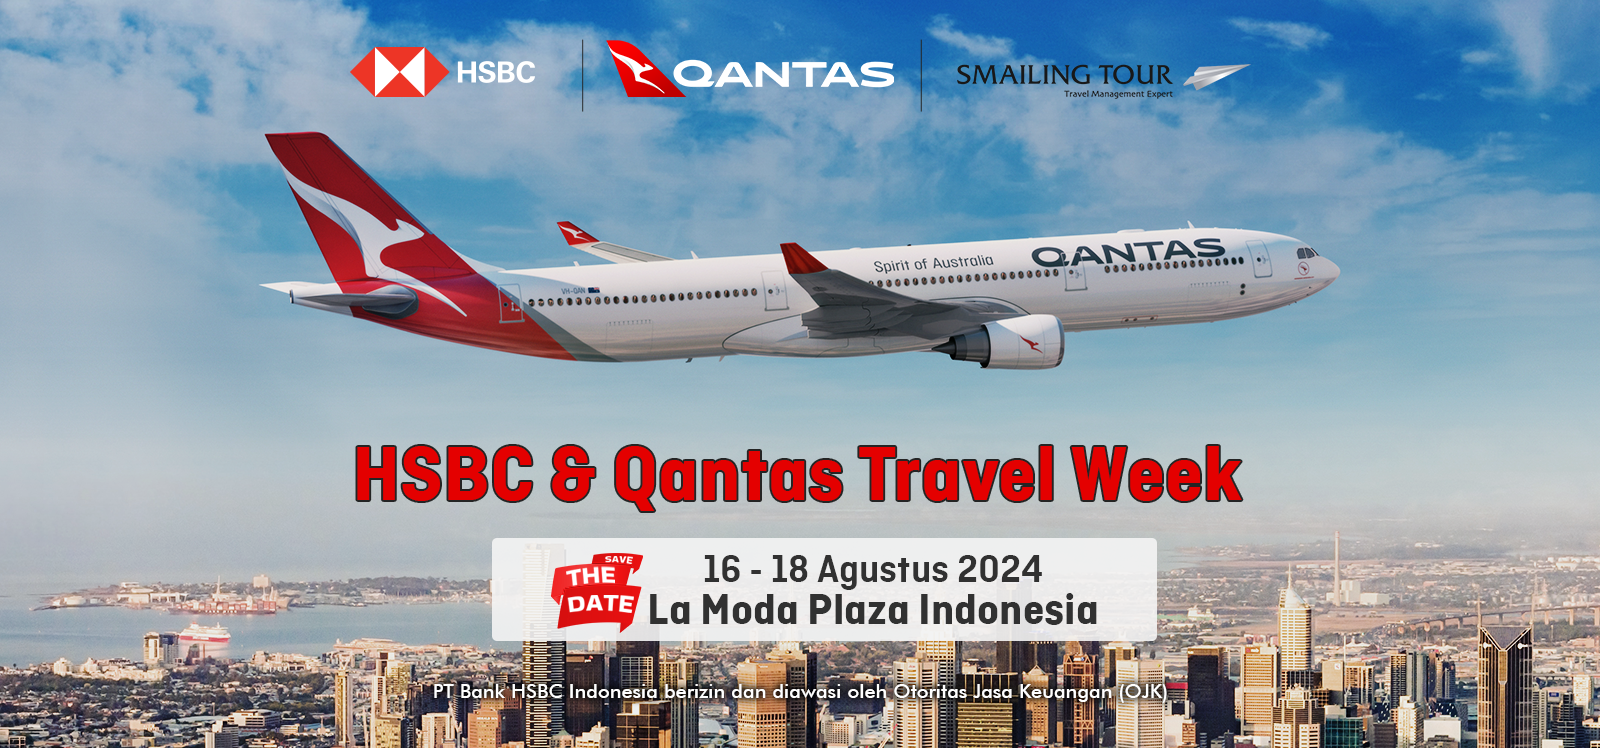 Qantas Travel Week 2024